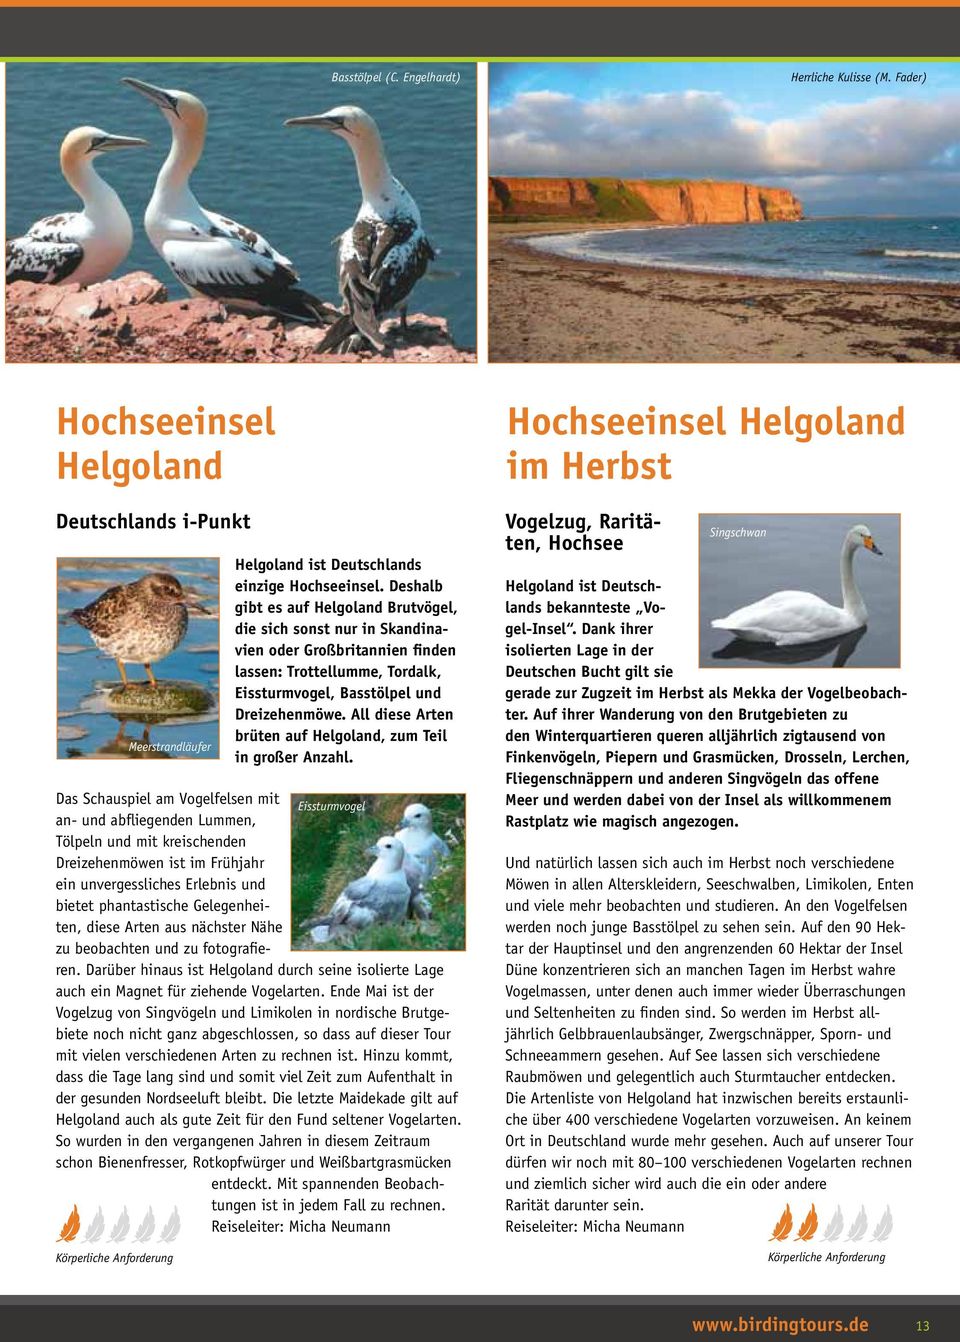 All diese Arten brüten auf Helgoland, zum Teil in großer Anzahl.